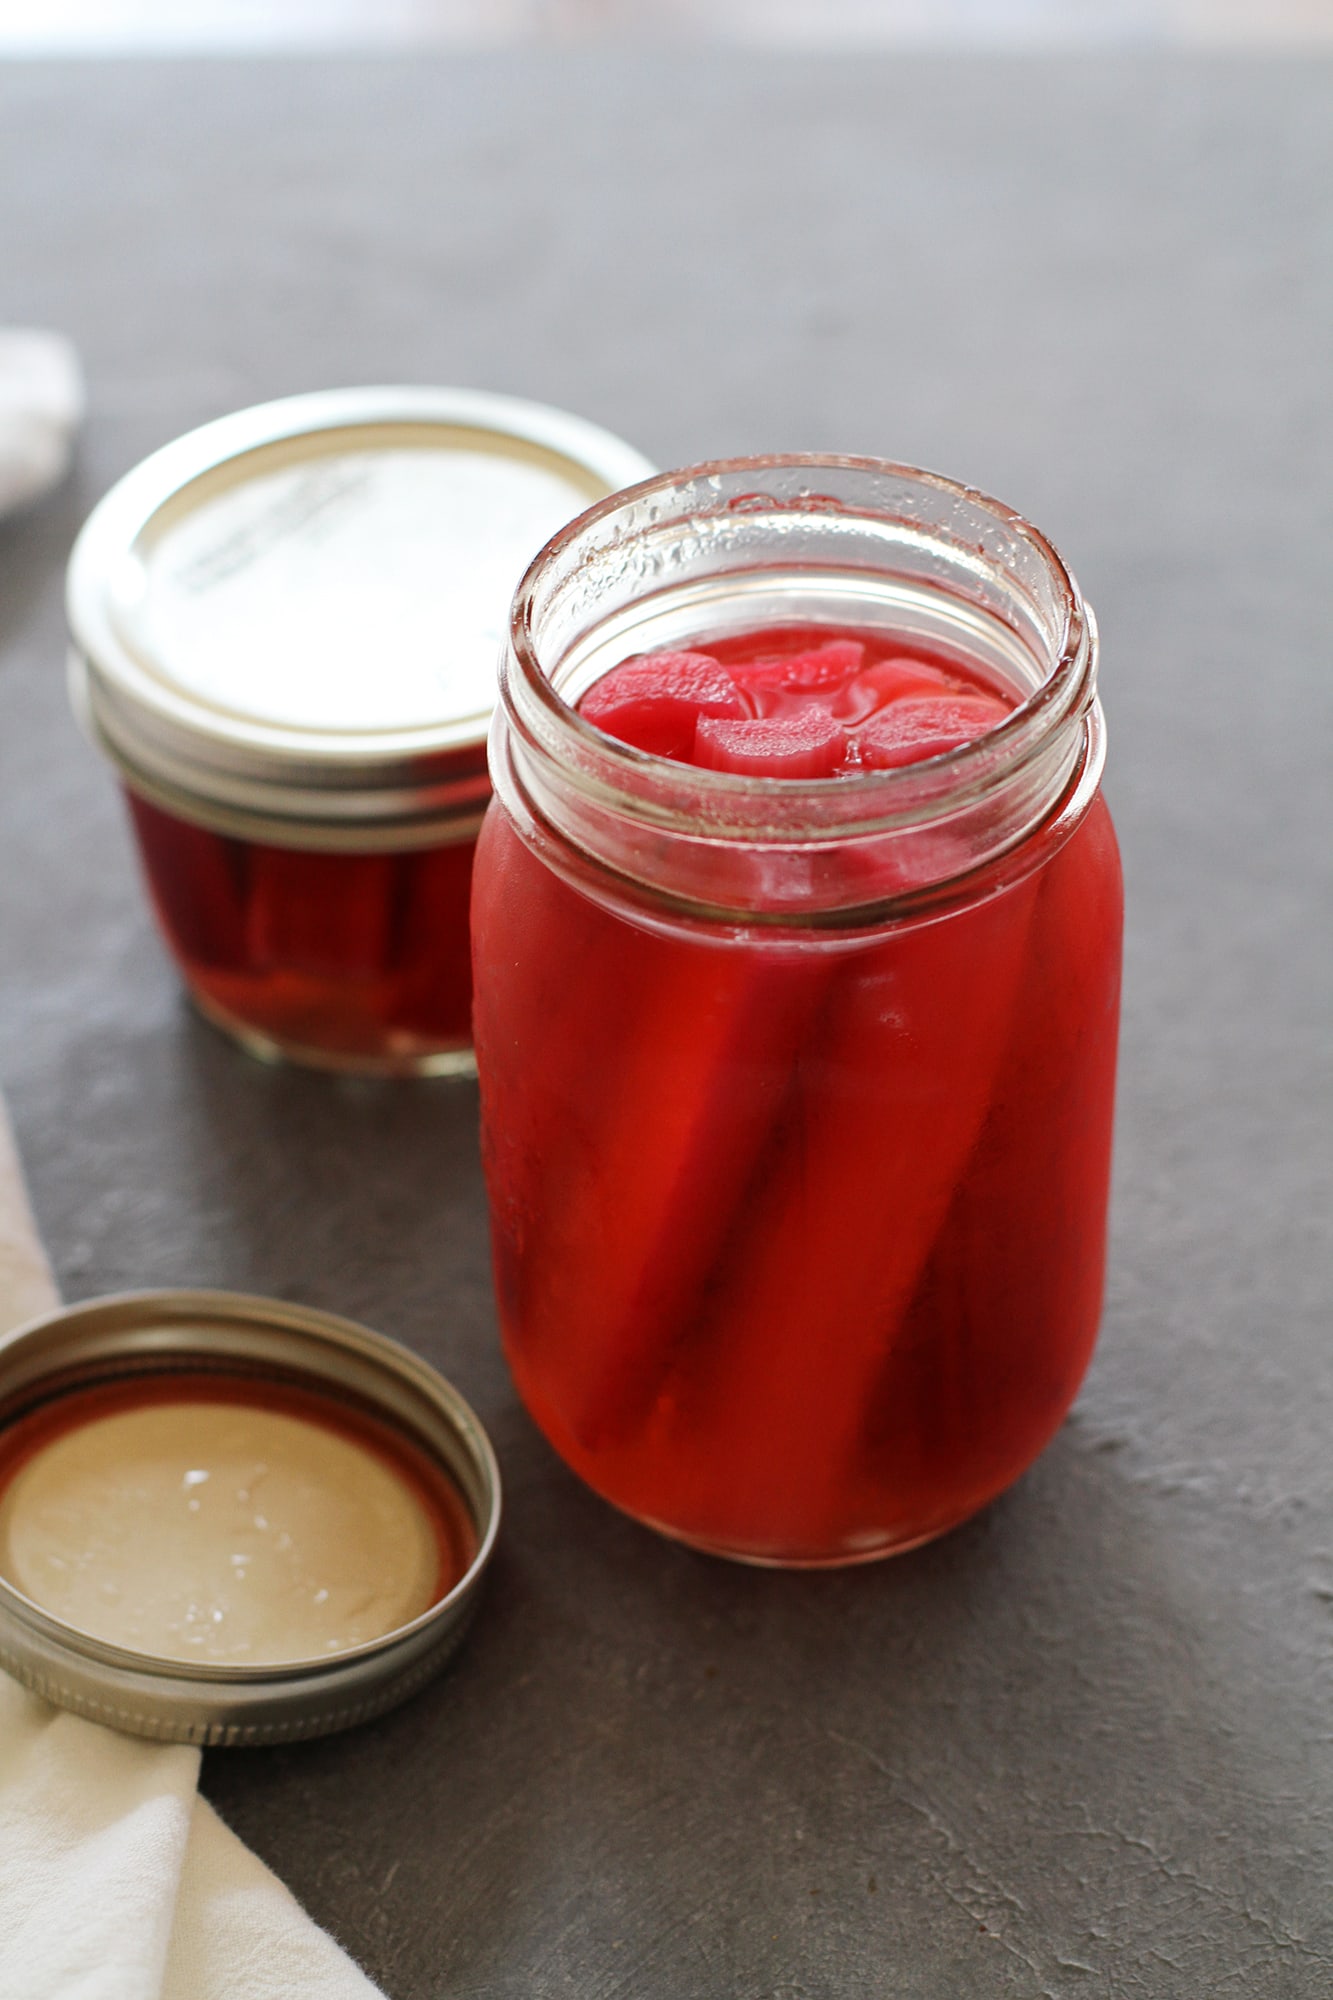 rhubarb in a pickling jar